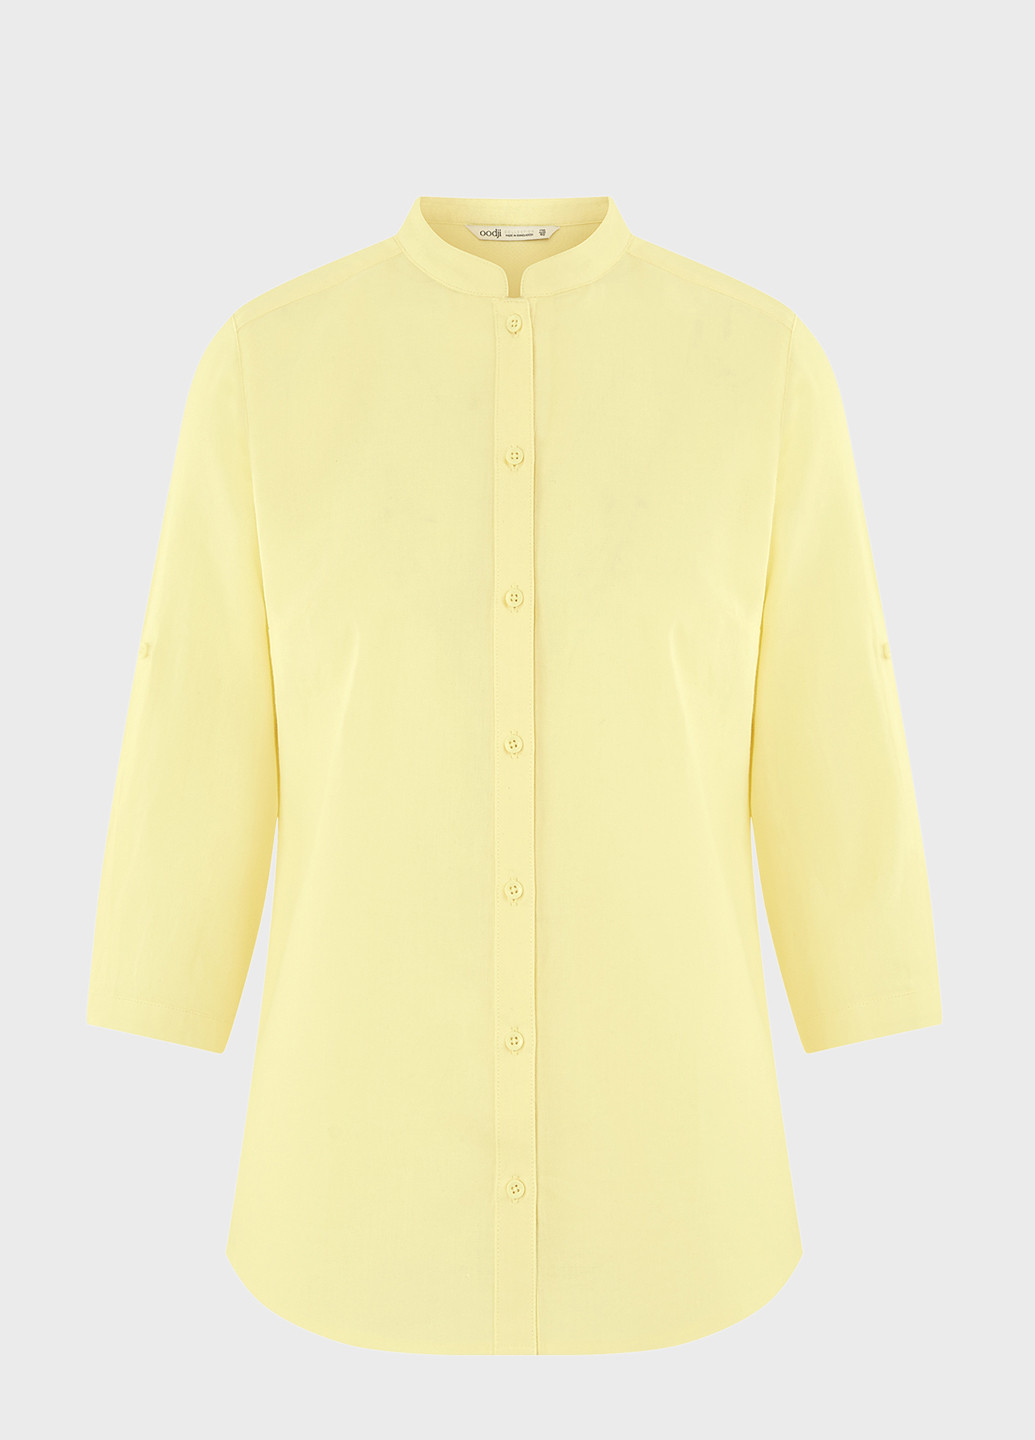 Желтая летняя блуза Oodji